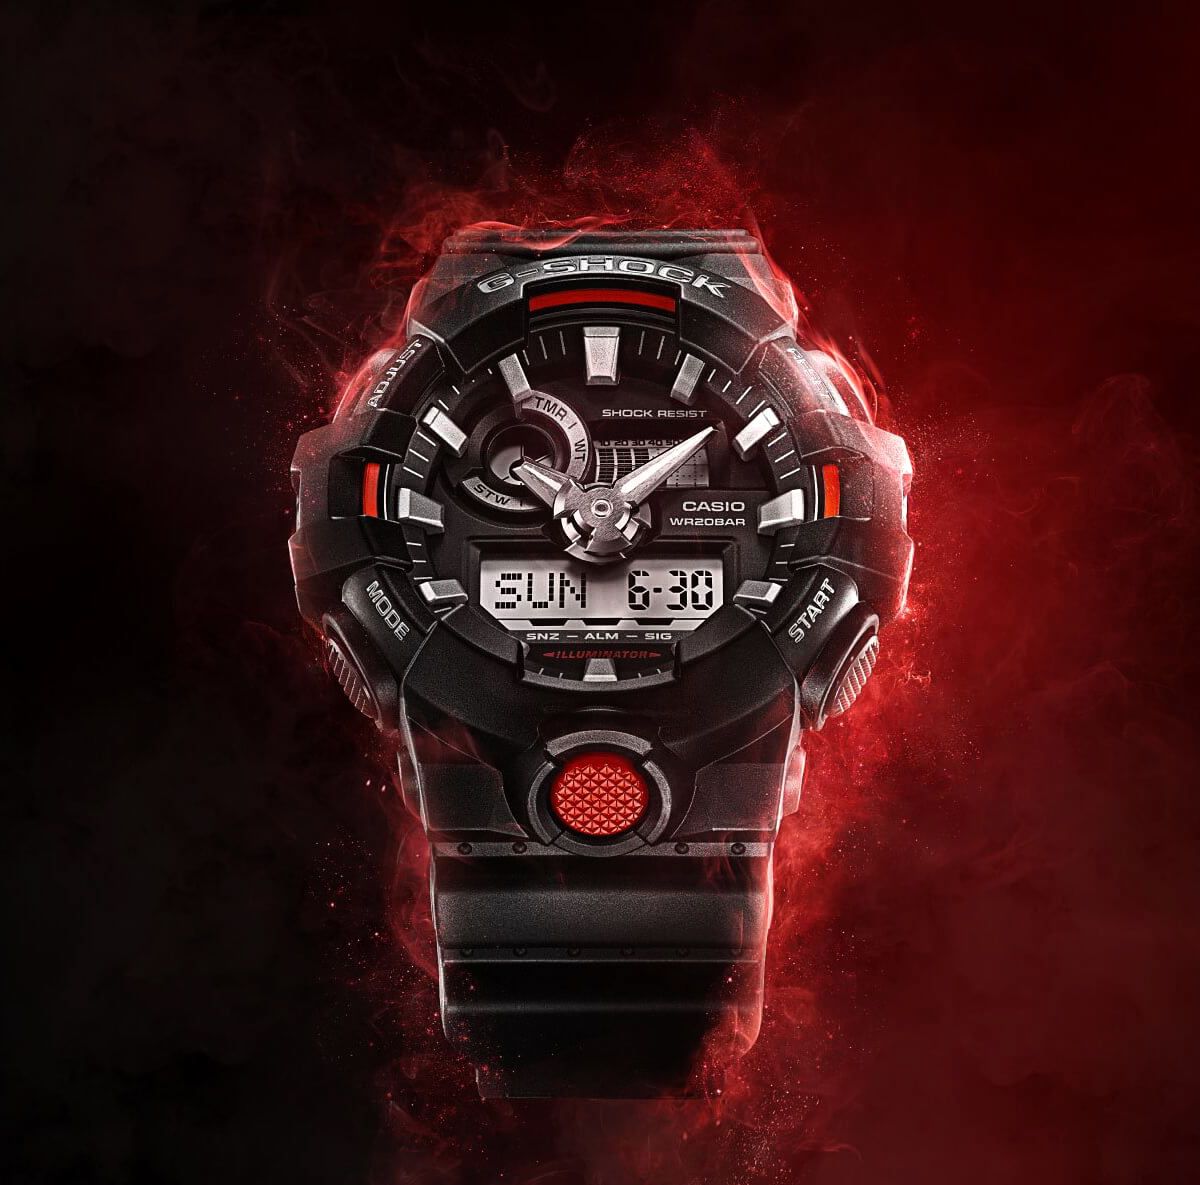 Комбинация триколора (красный, черный и белый) сконцентрирована на определенных областях часов, чтобы вывести точную и смелую эстетику наилучшим образом